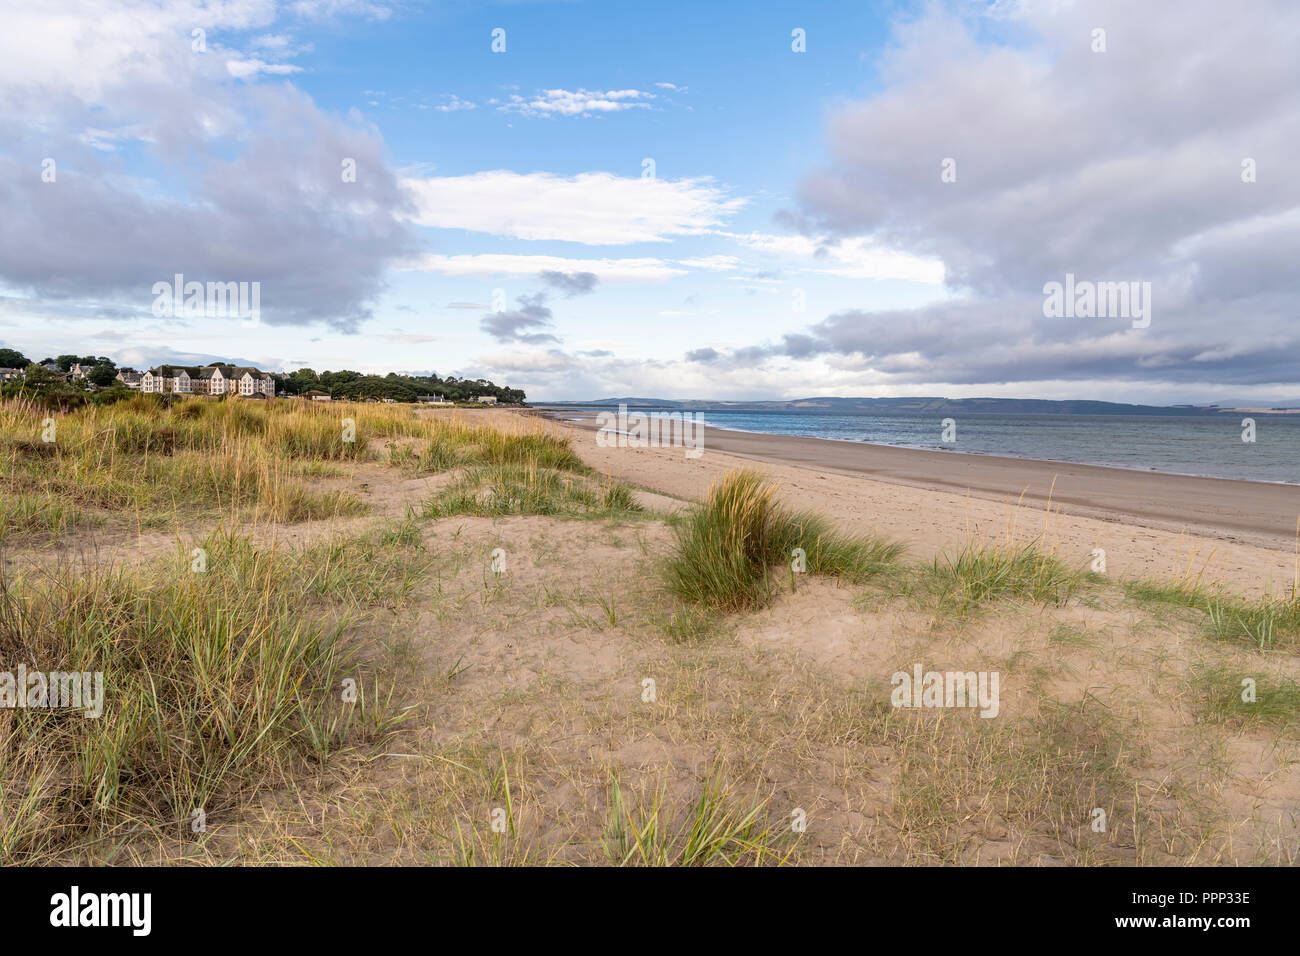 Nairn Beach, Scotland Stock Photo